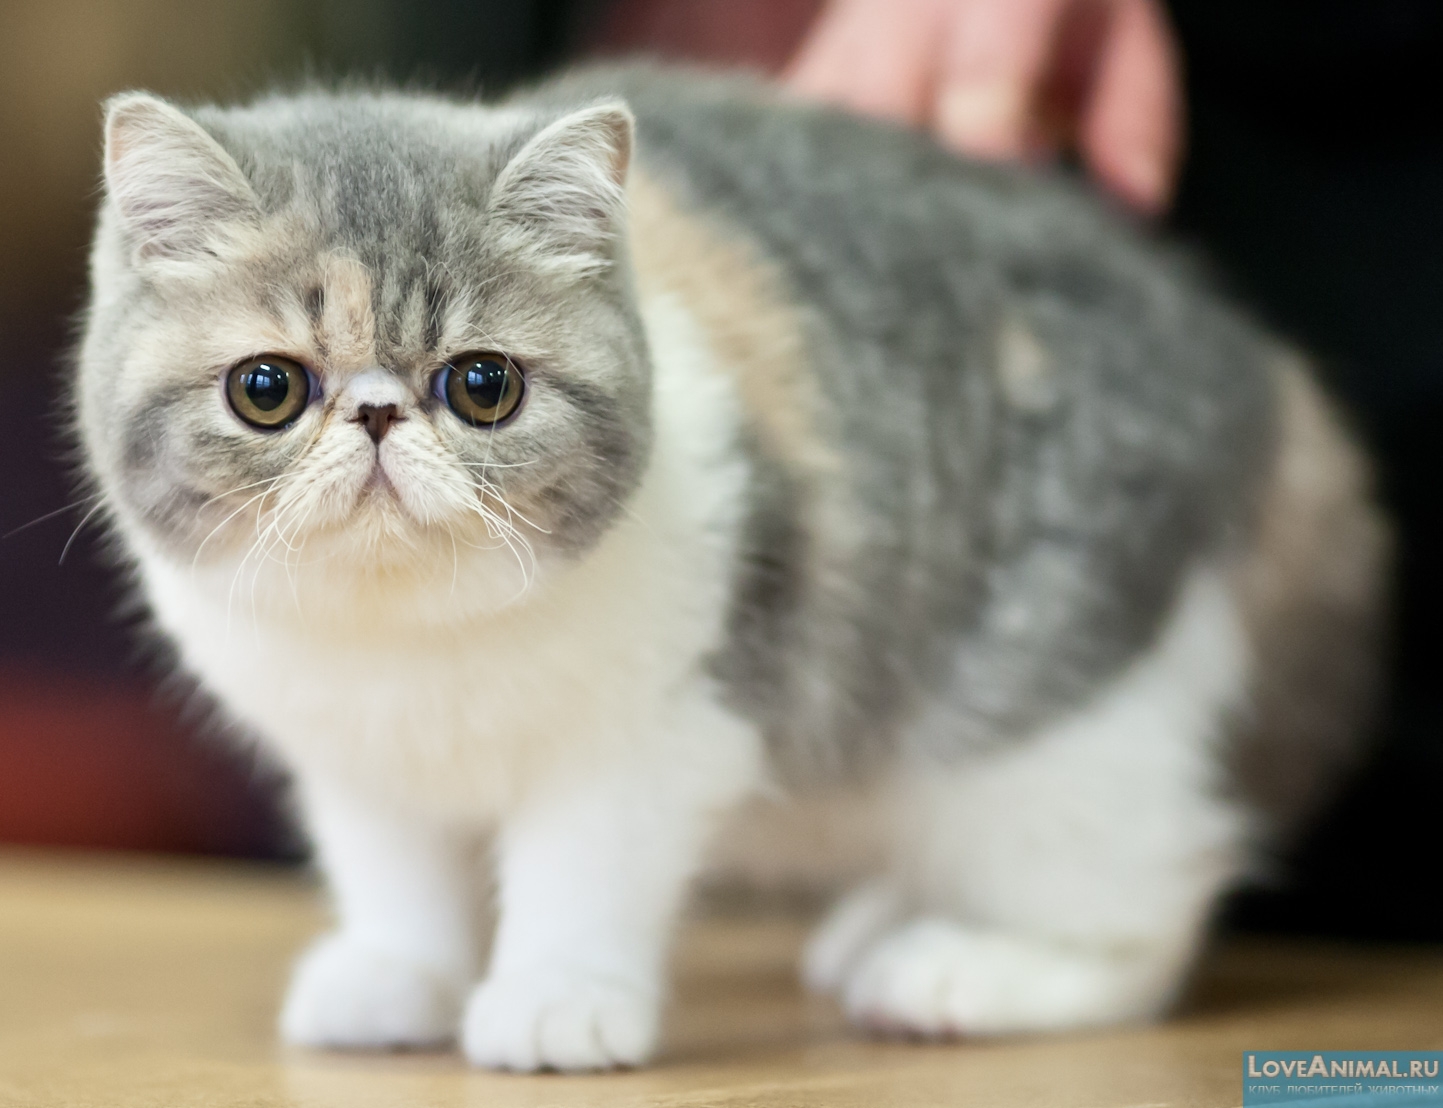 Экзотическая короткошерстная кошка. Экзот. Описание с фото и видео